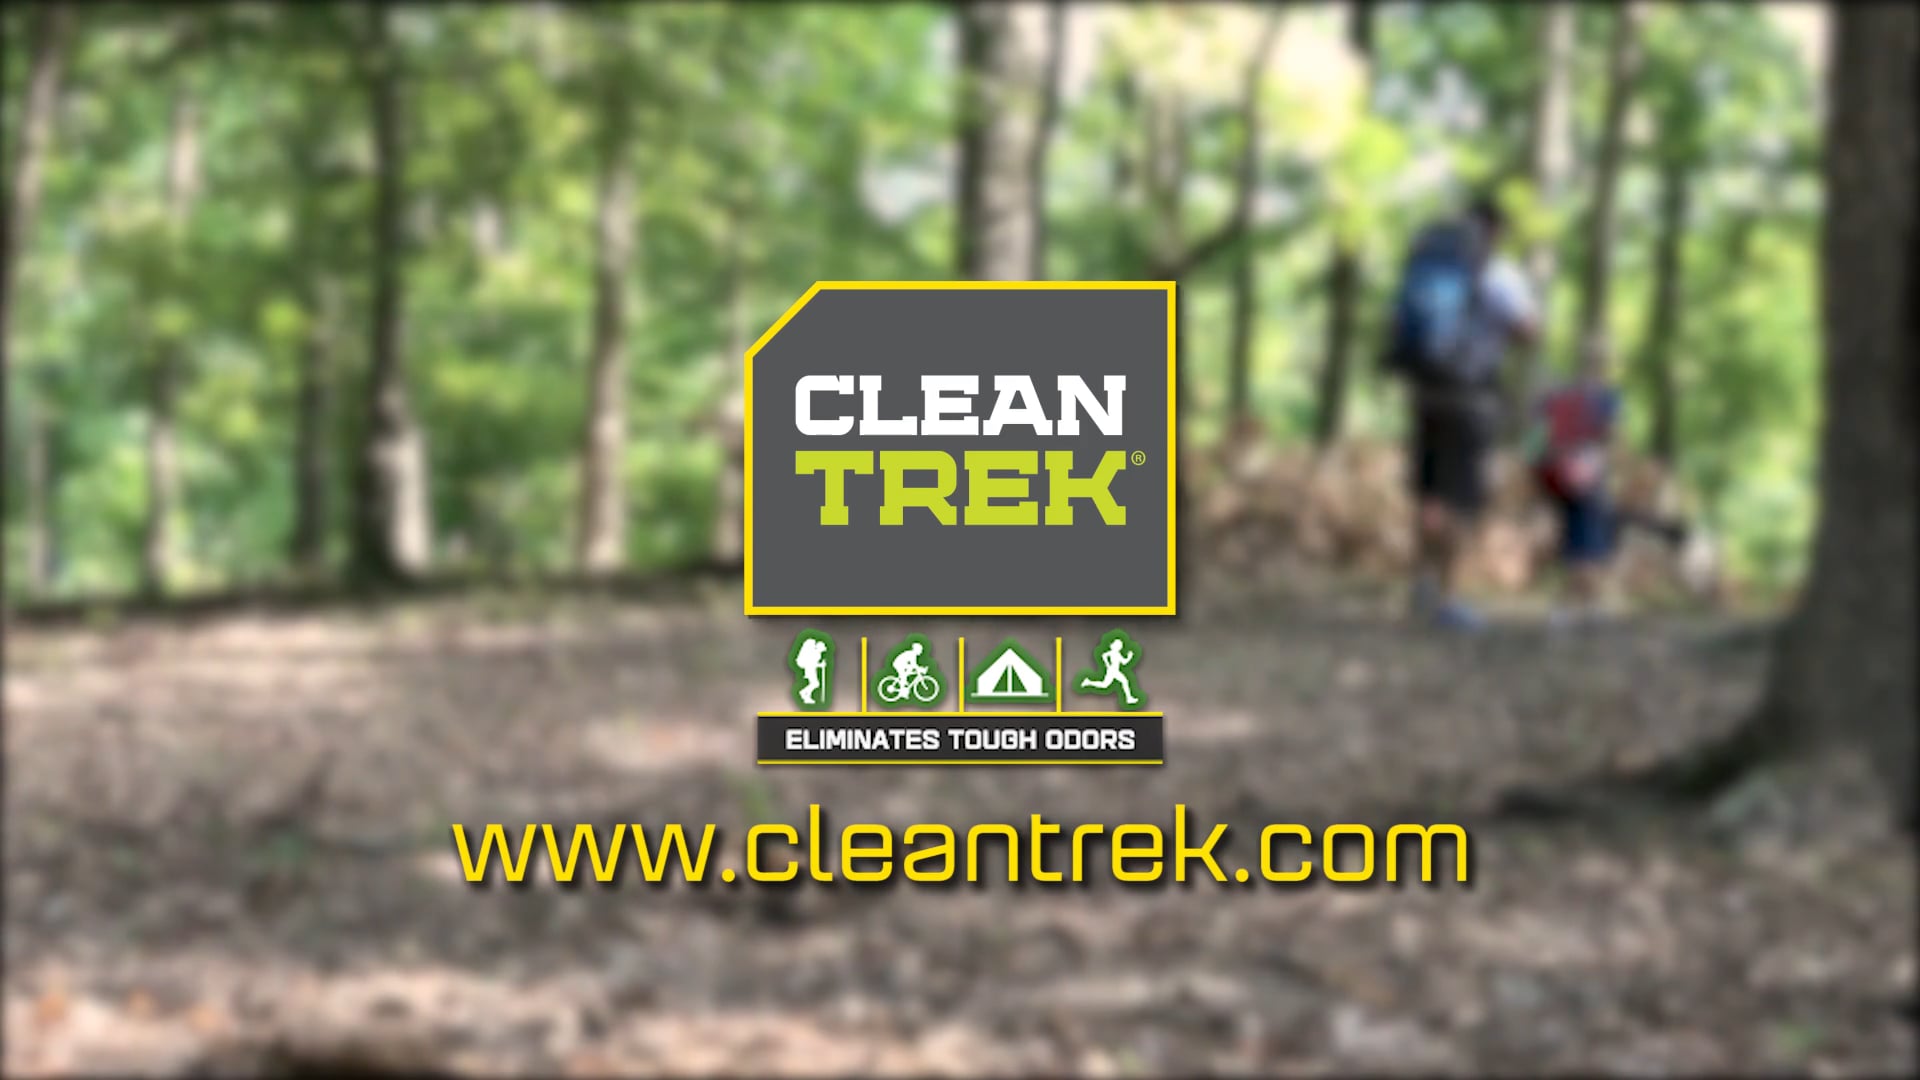 Clean Trek Product Video